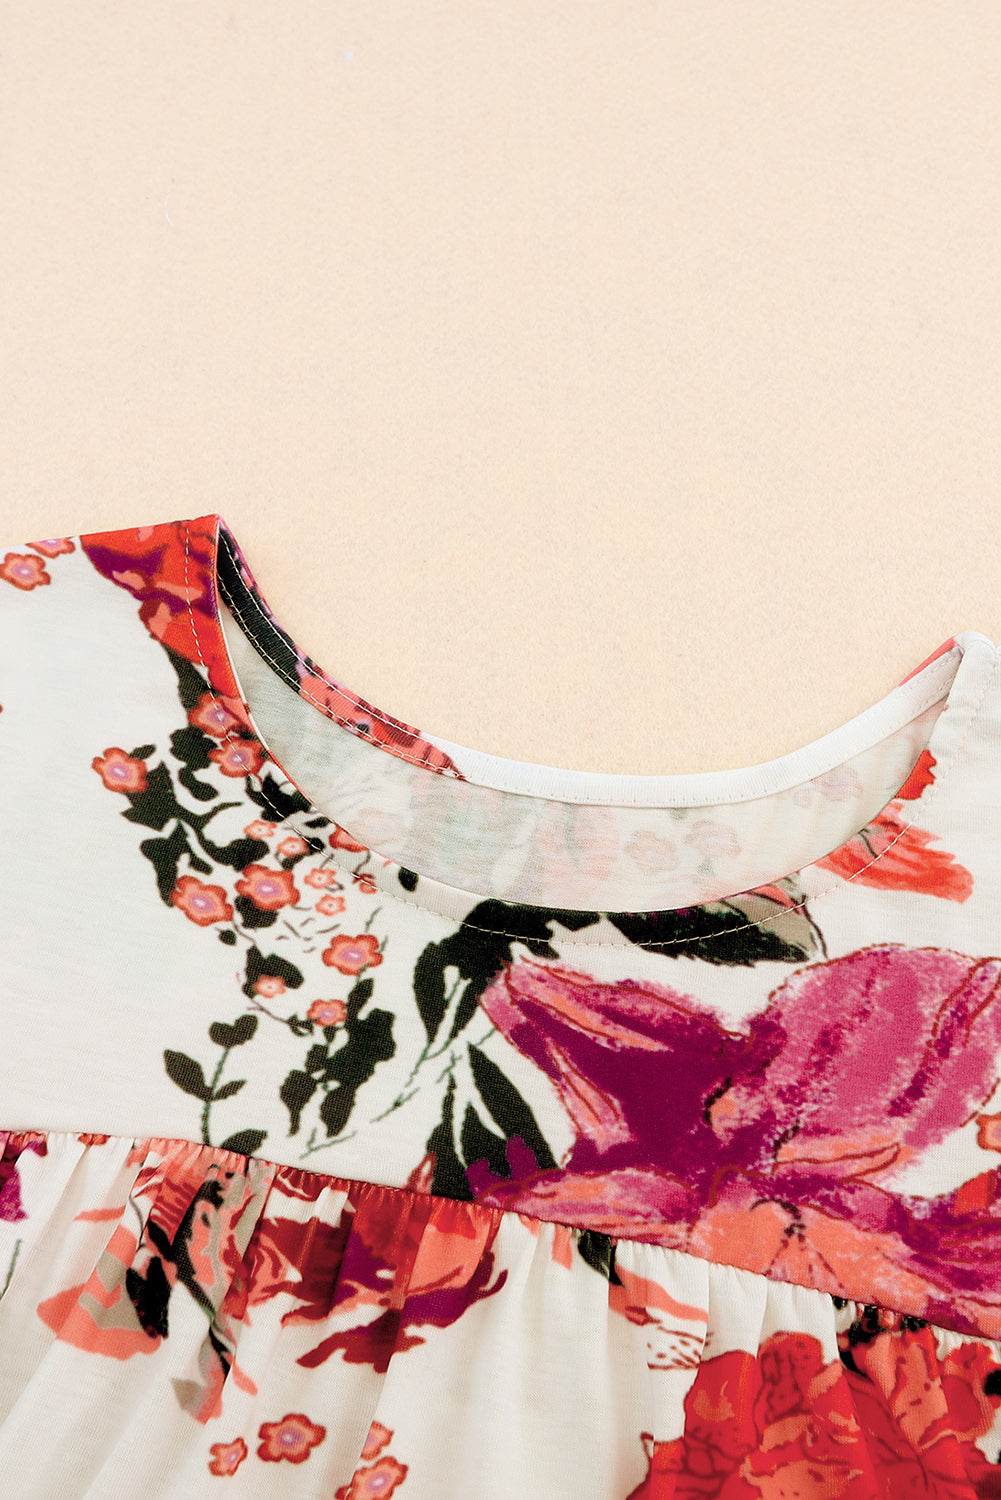 Feurig rote, kurzärmlige Bluse mit Rundhalsausschnitt und Blumenmuster